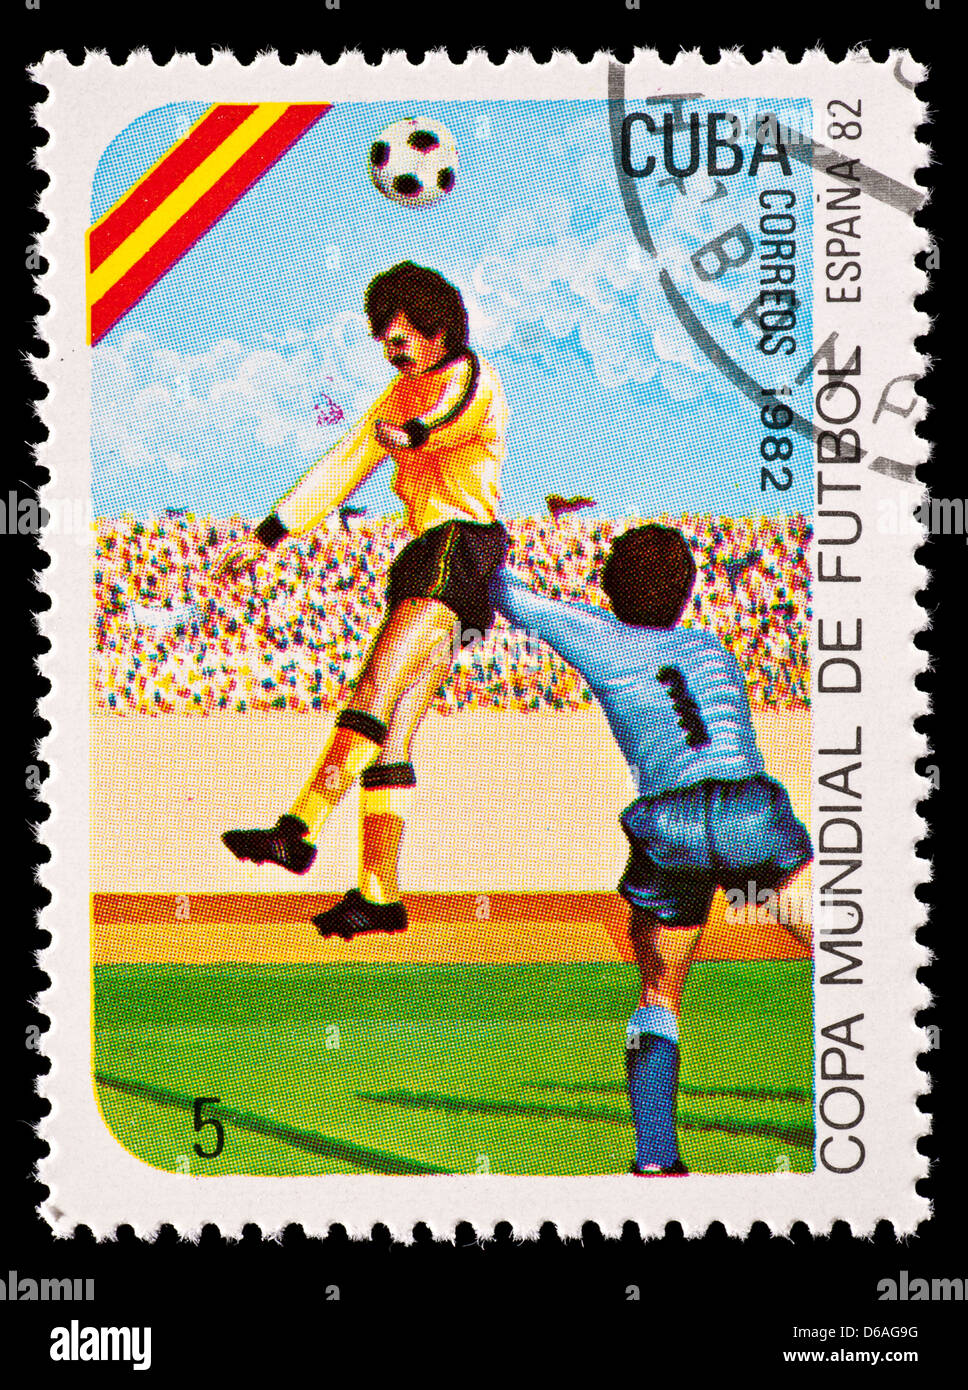 Timbre-poste de Cuba représentant un joueur de football à la tête d'une balle, émis pour la Coupe du Monde 1982 en Espagne. Banque D'Images